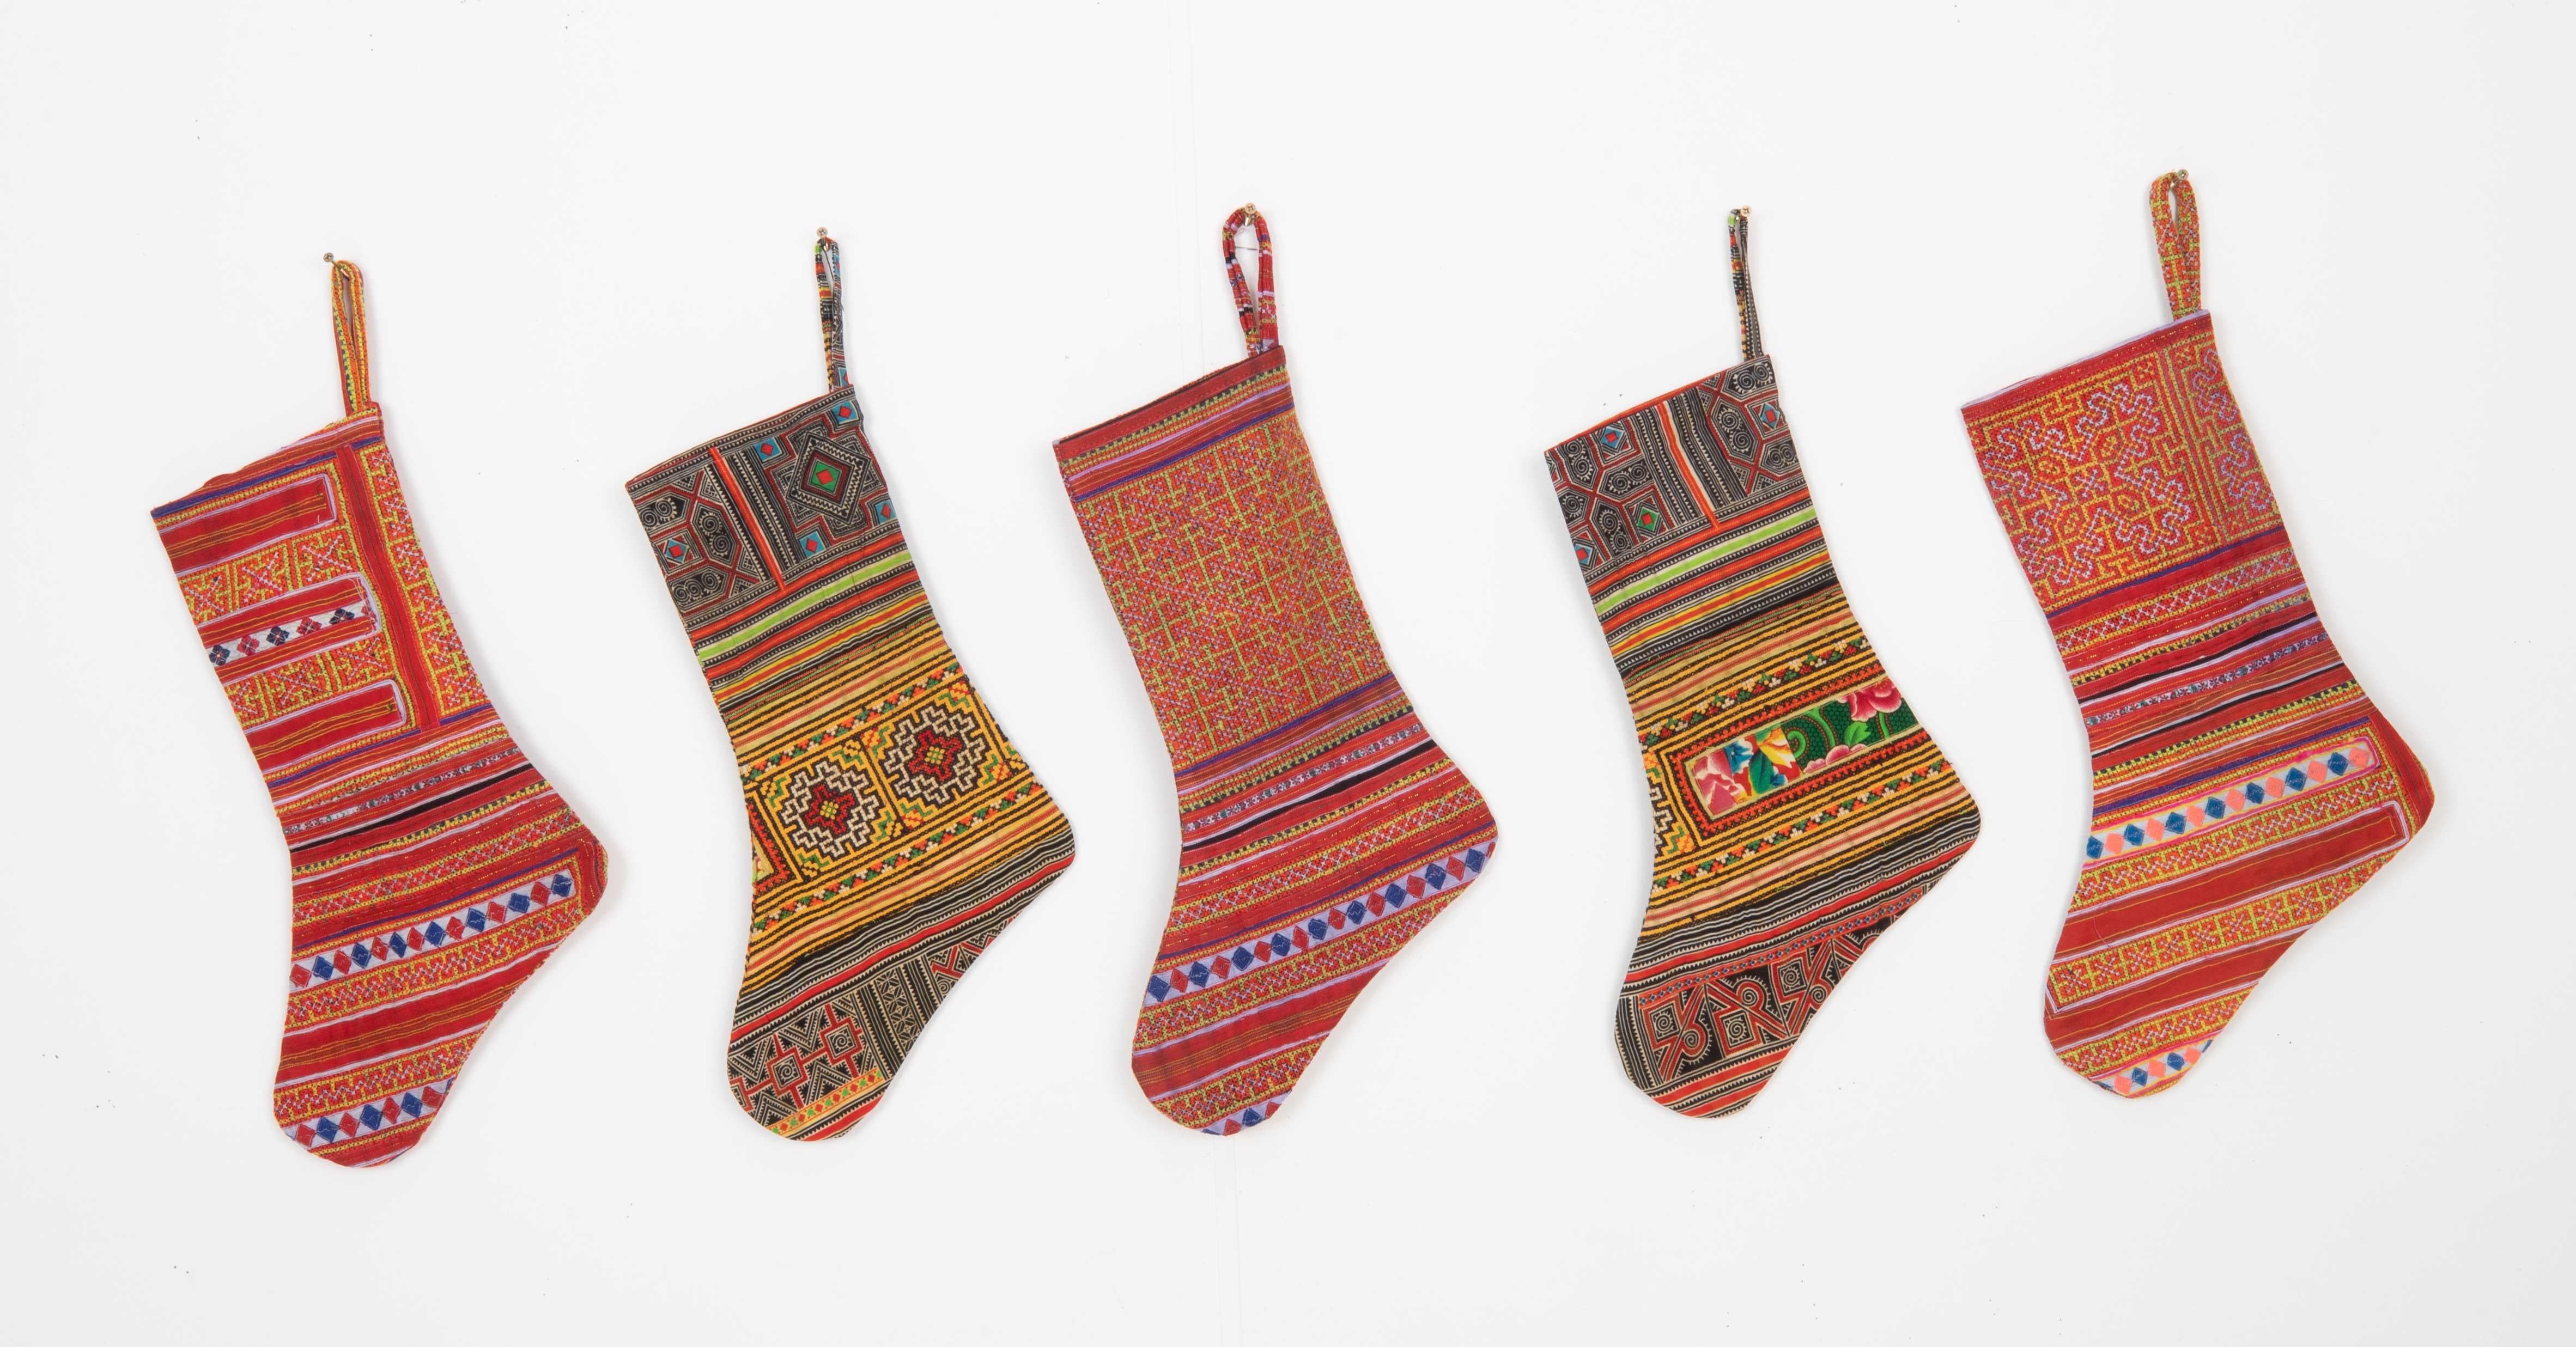 Dieser Weihnachtsstrumpf wurde aus einem Hmong-Textilfragment vom Ende des 19. oder Anfang des 20. Jahrhunderts hergestellt.
Leinen im Rücken.

Bitte beachten Sie, dass dieser Strumpf ausHmong-Textilfragmenten hergestellt wurde.
